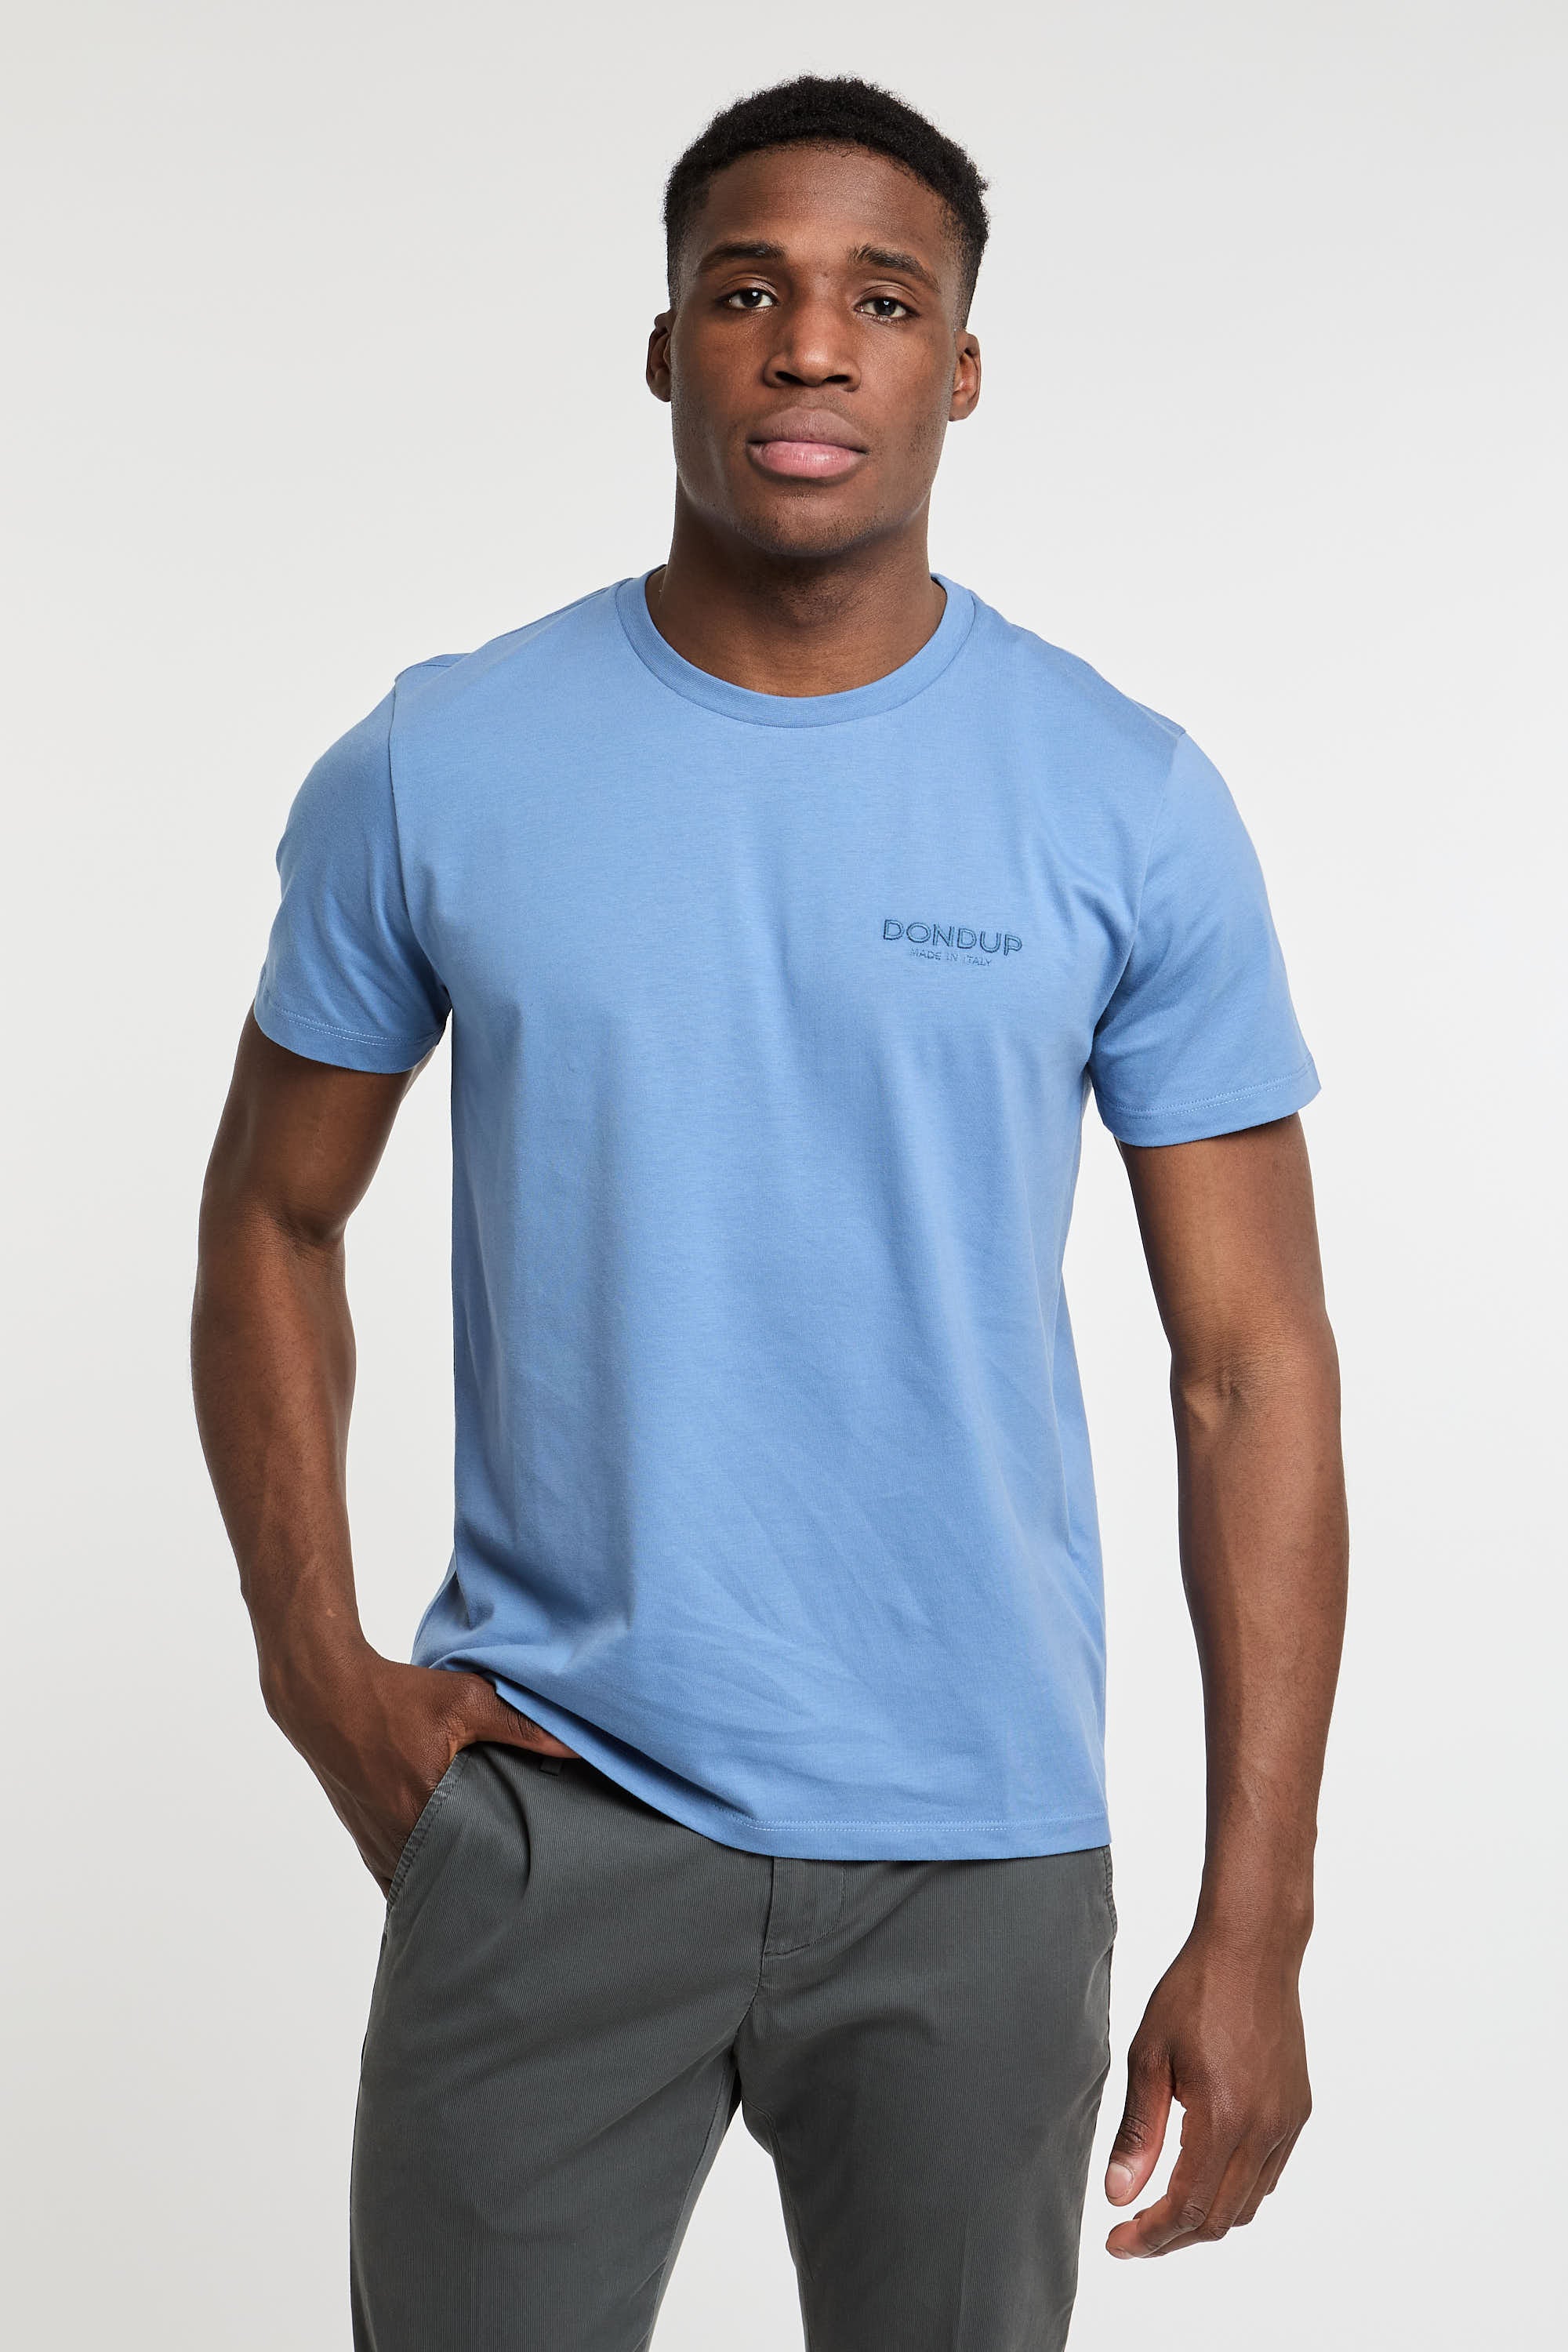 Dondup T-Shirt Cotton Light Blue-1